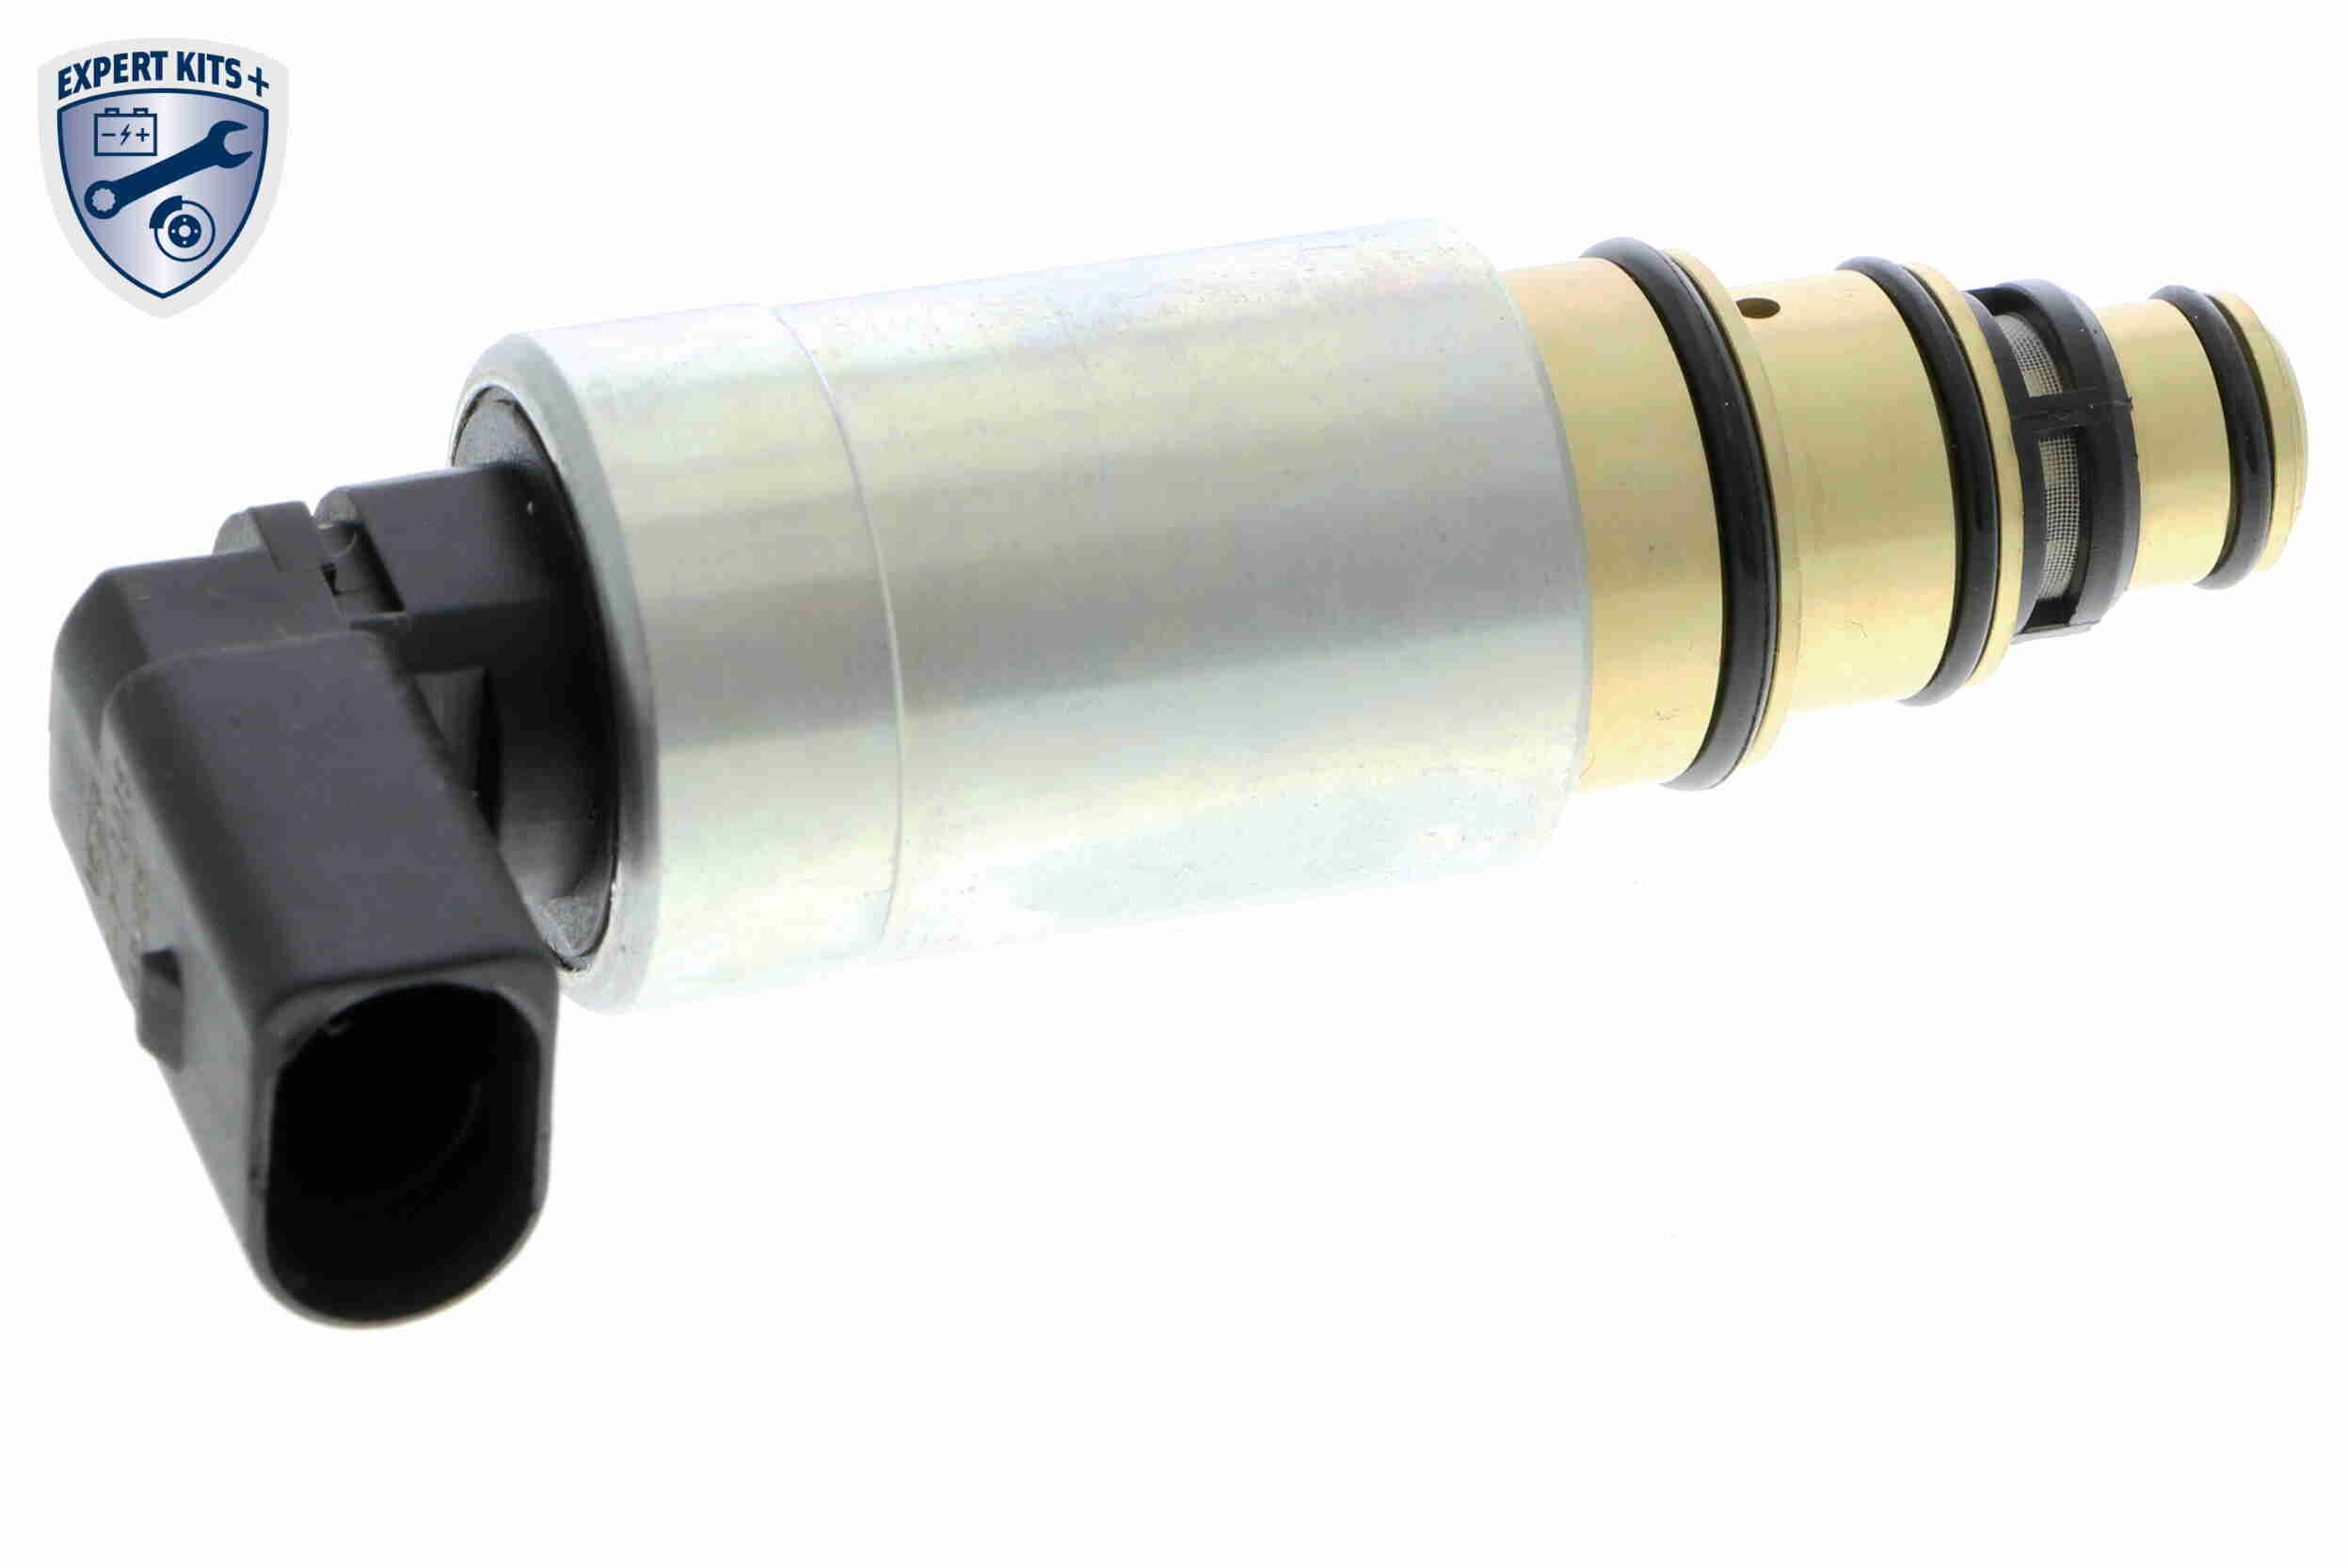 Regulačný ventil kompresora VEMO